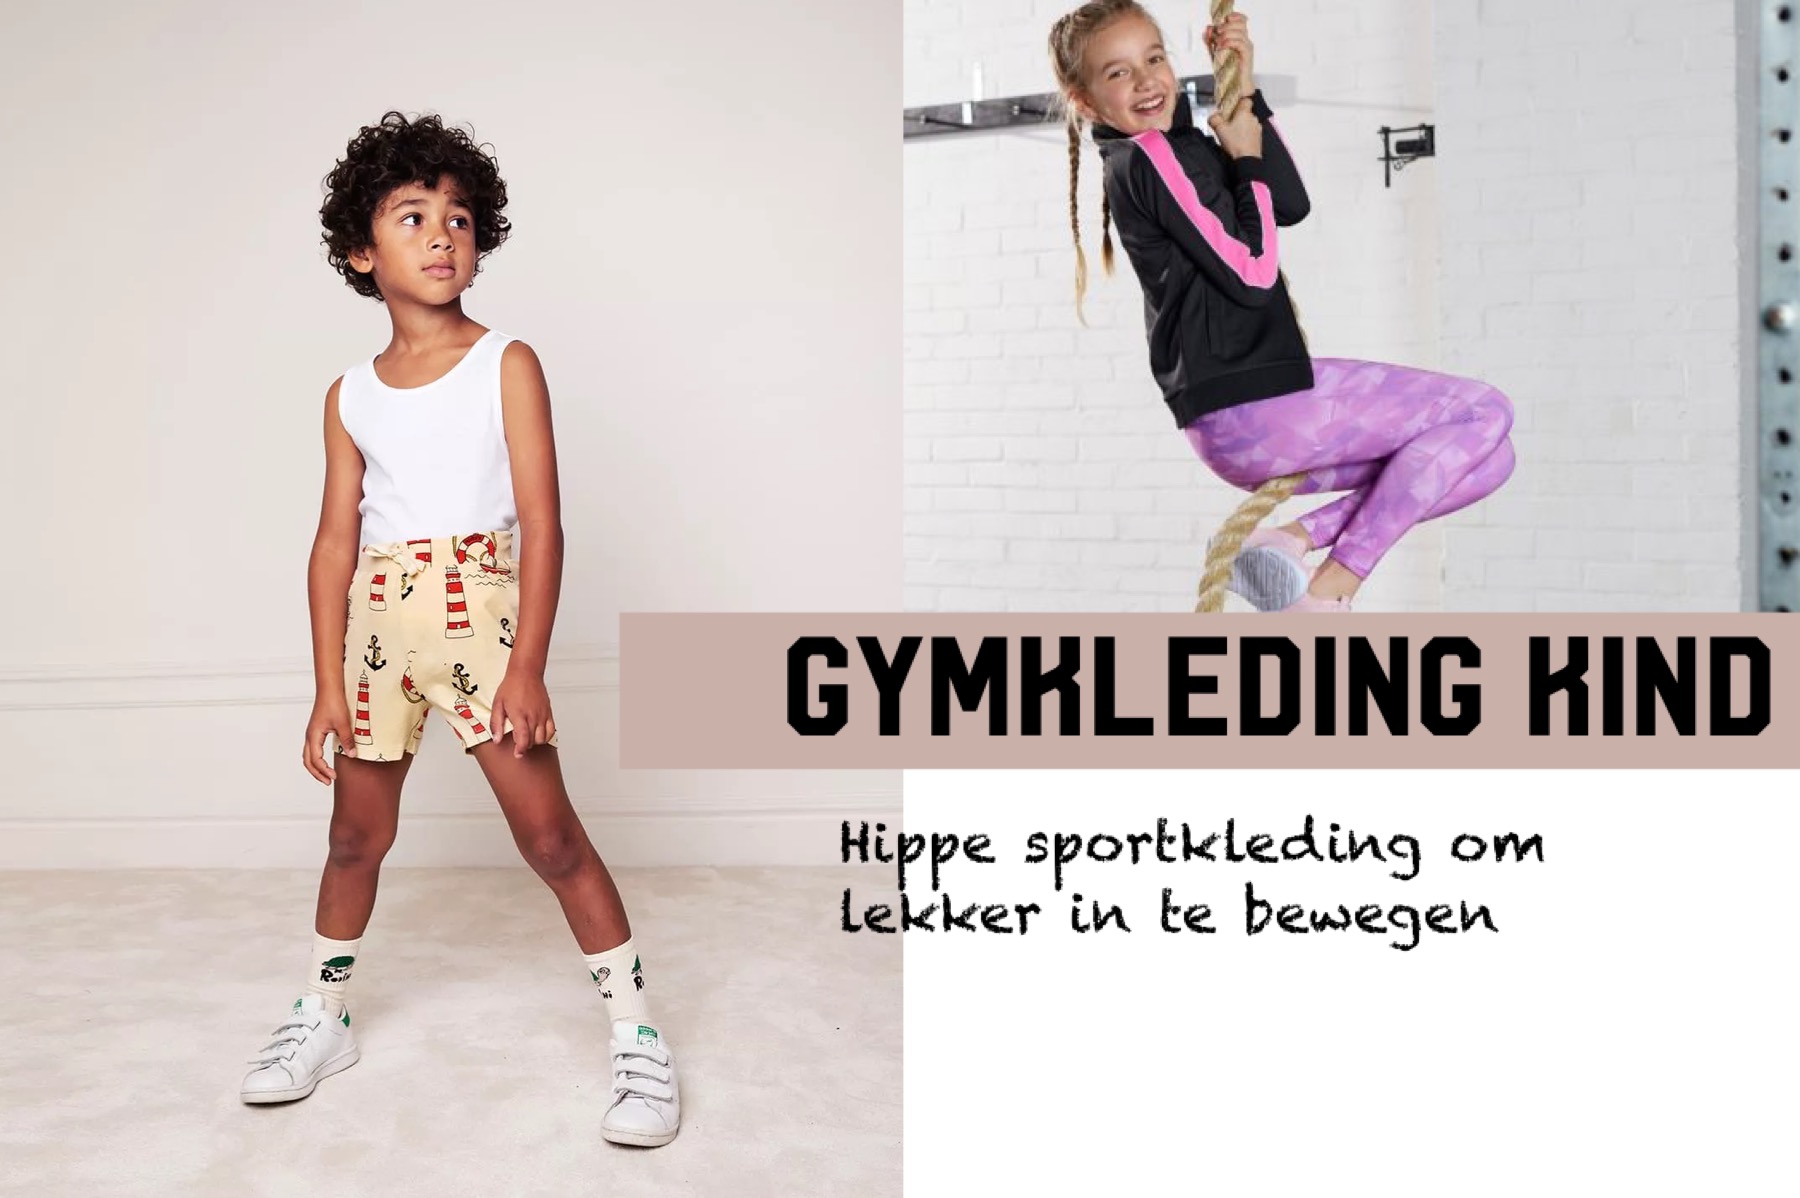 beeld Ideaal Cornwall Gymkleding kind: hippe sportkleding om lekker in te bewegen -